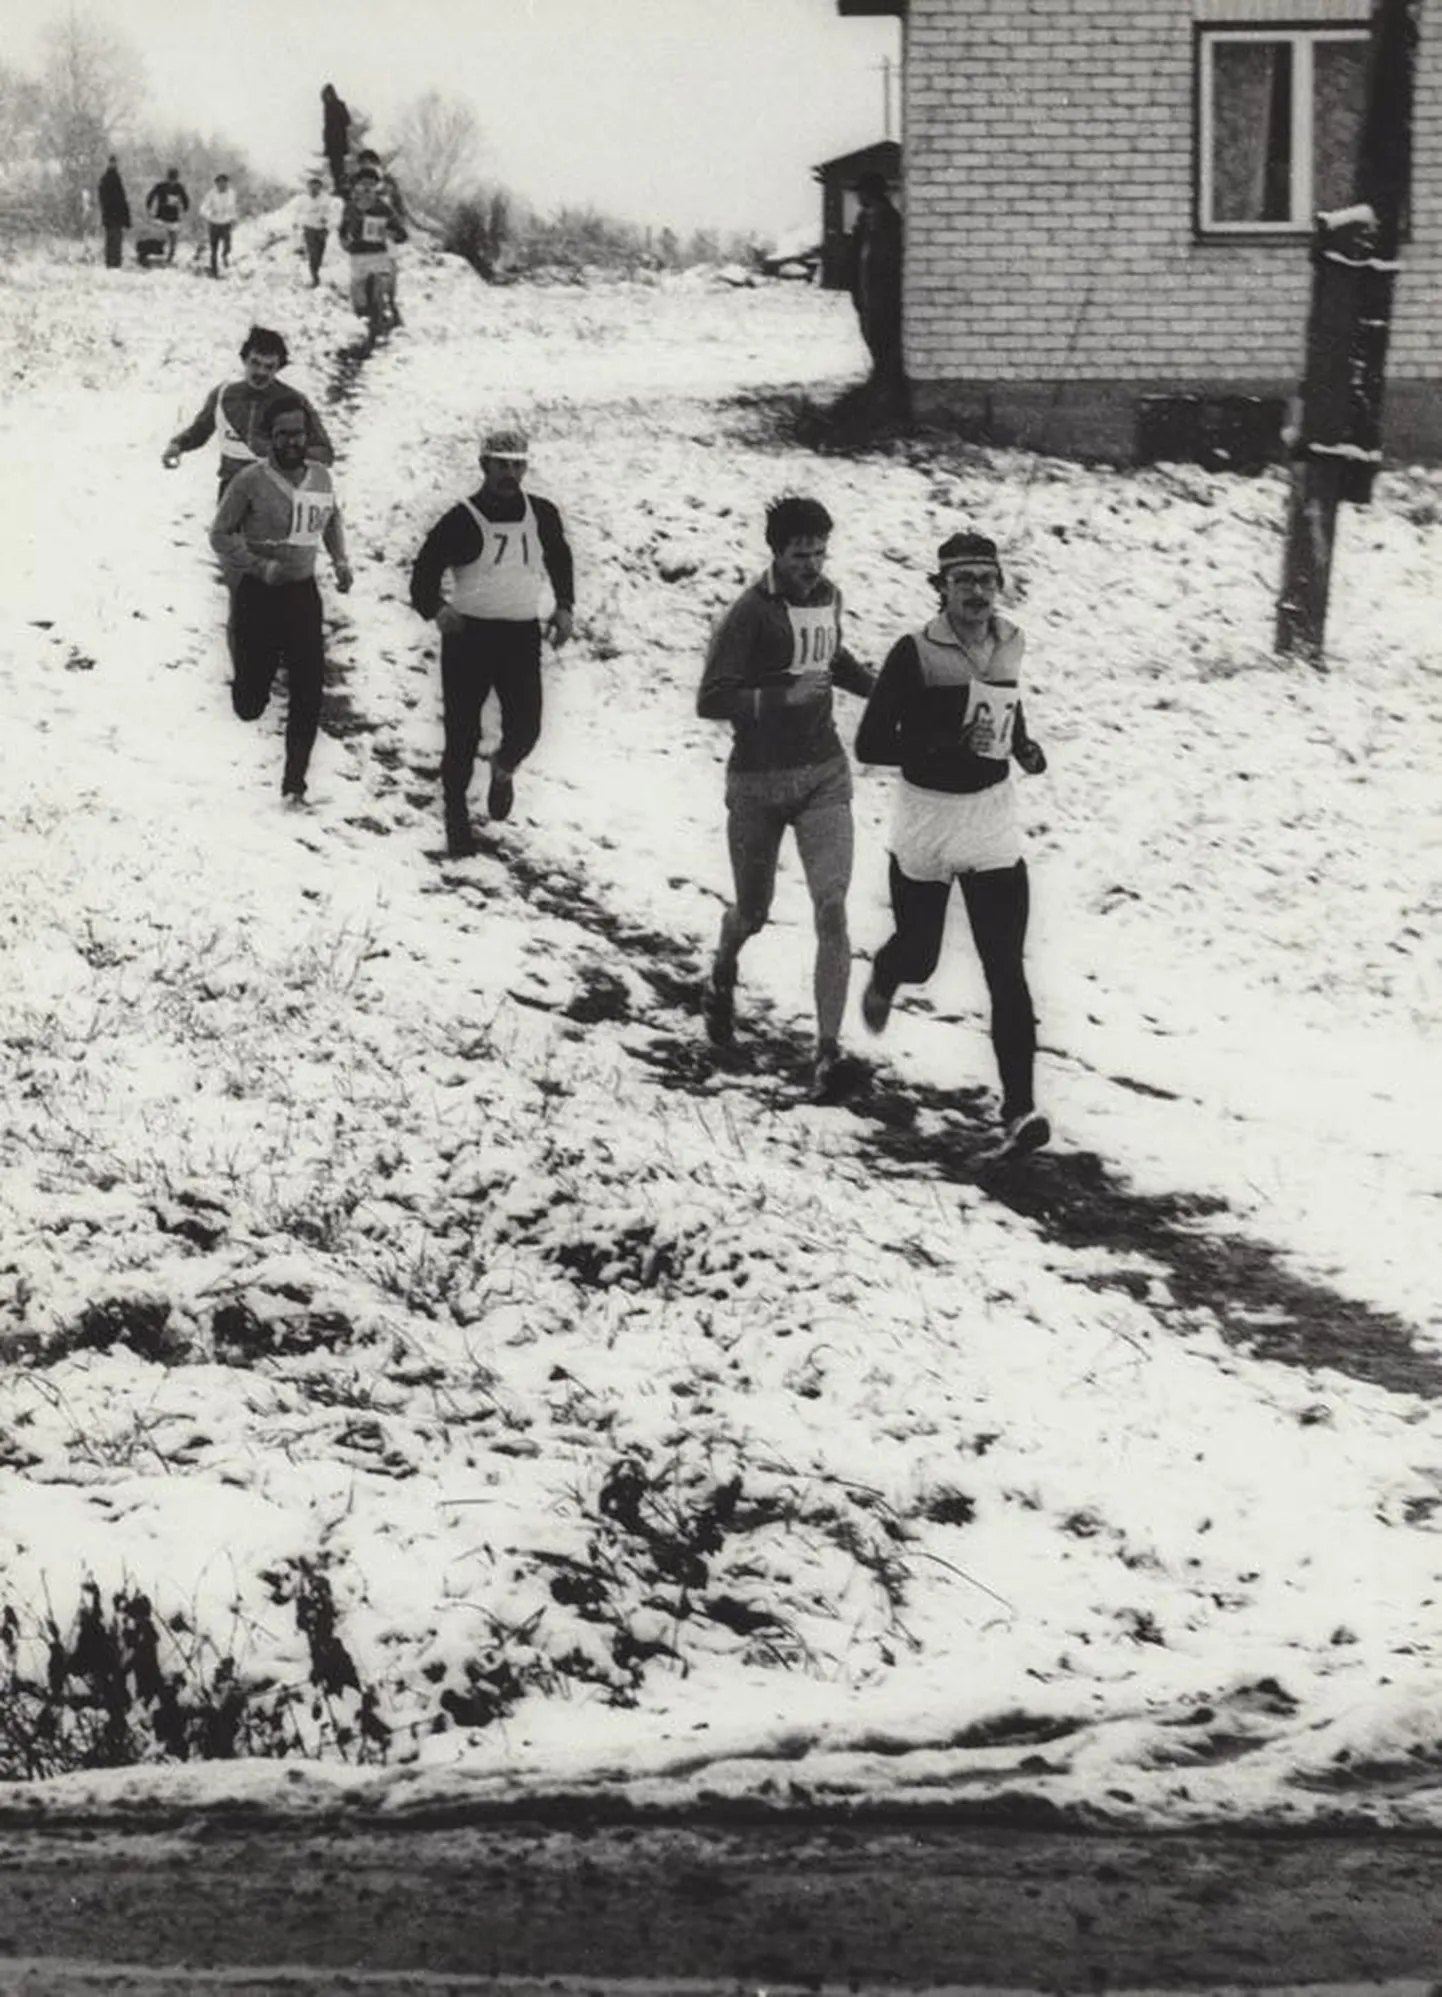 See fotomeenutus ümber Viljandi linna jooksust pärineb 1978. aastast, kui oktoobri algul sadas maha lumi ning jooksjad pidid 13 kilomeetri pikkuse raja läbima talvistes oludes.